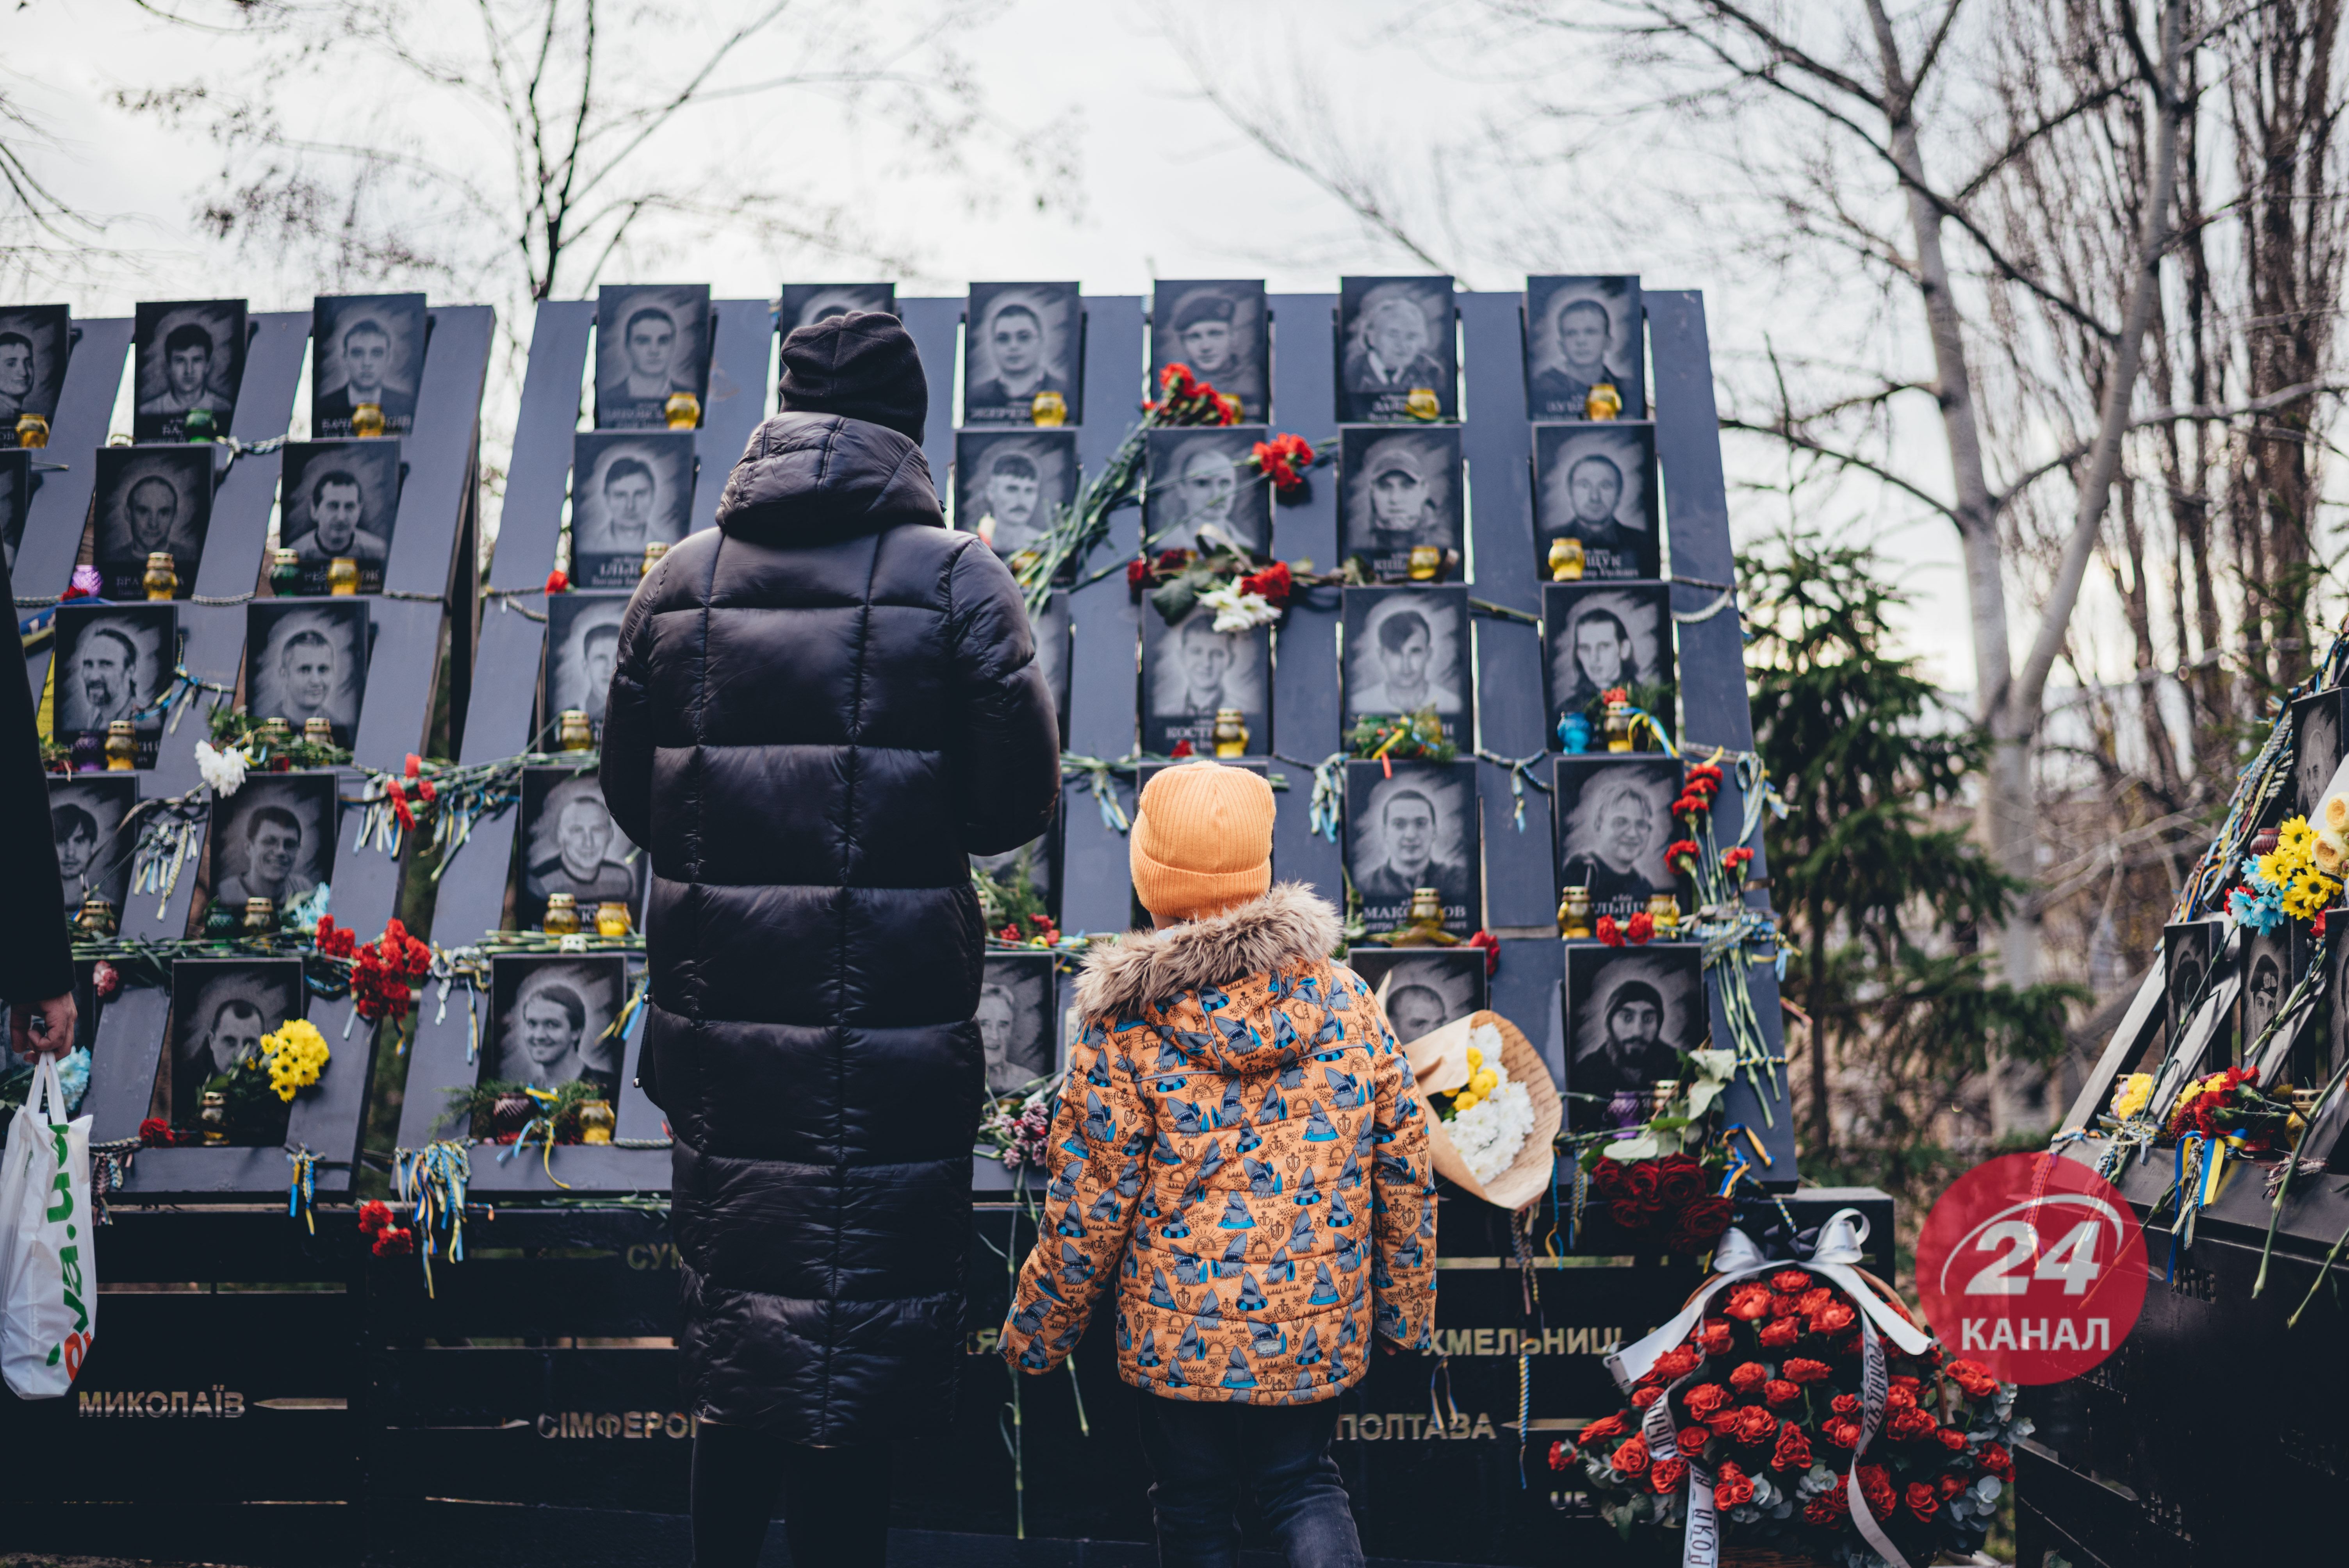 8 років Революції Гідності: як у містах України відзначають пам'ятний день - Новини Полтави - 24 Канал